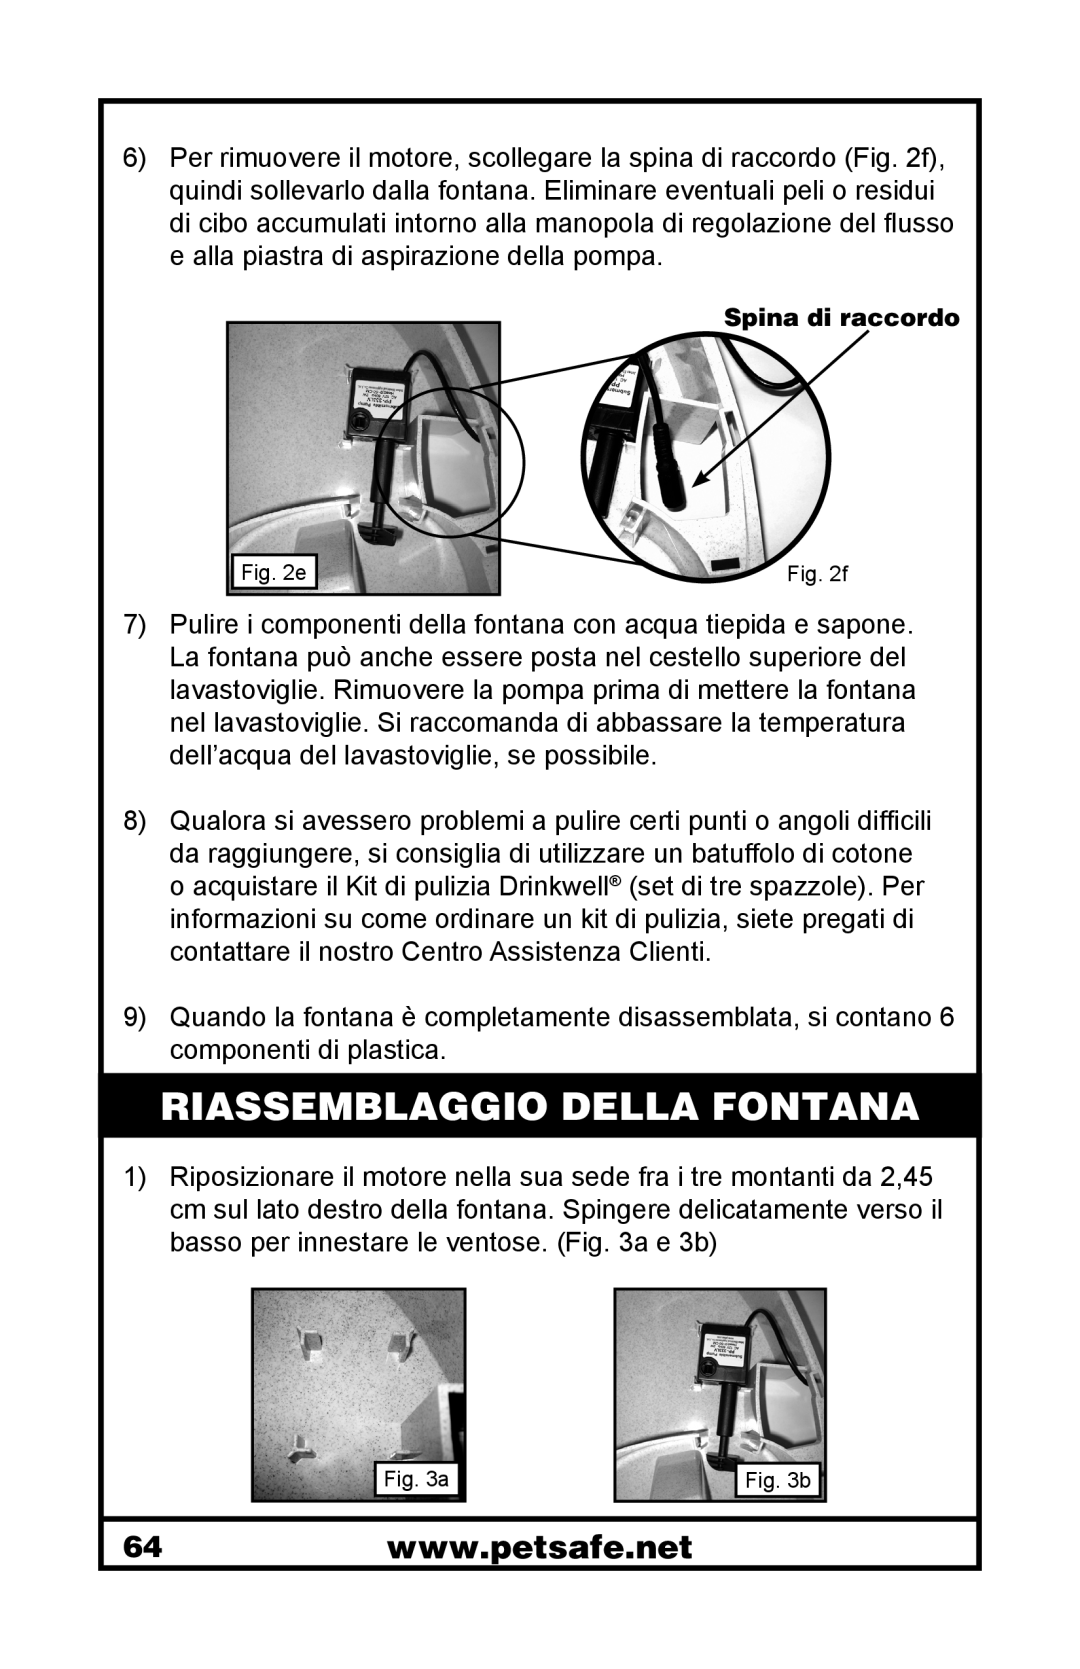 Petsafe 400-1255-19 manuel dutilisation Riassemblaggio Della Fontana, Spina di raccordo 